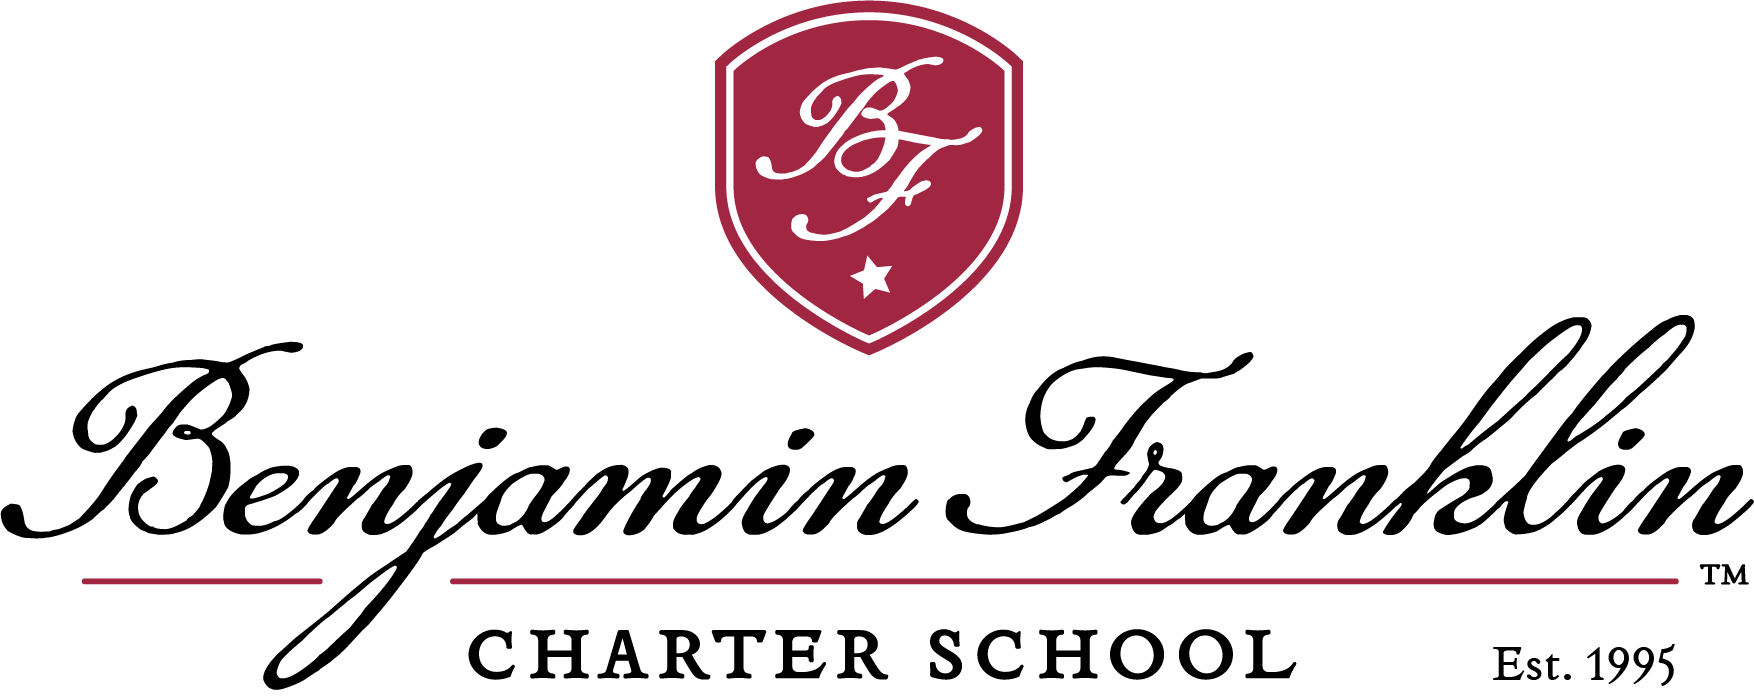 Benjamin Franklin Charter School - Queen Creek logo